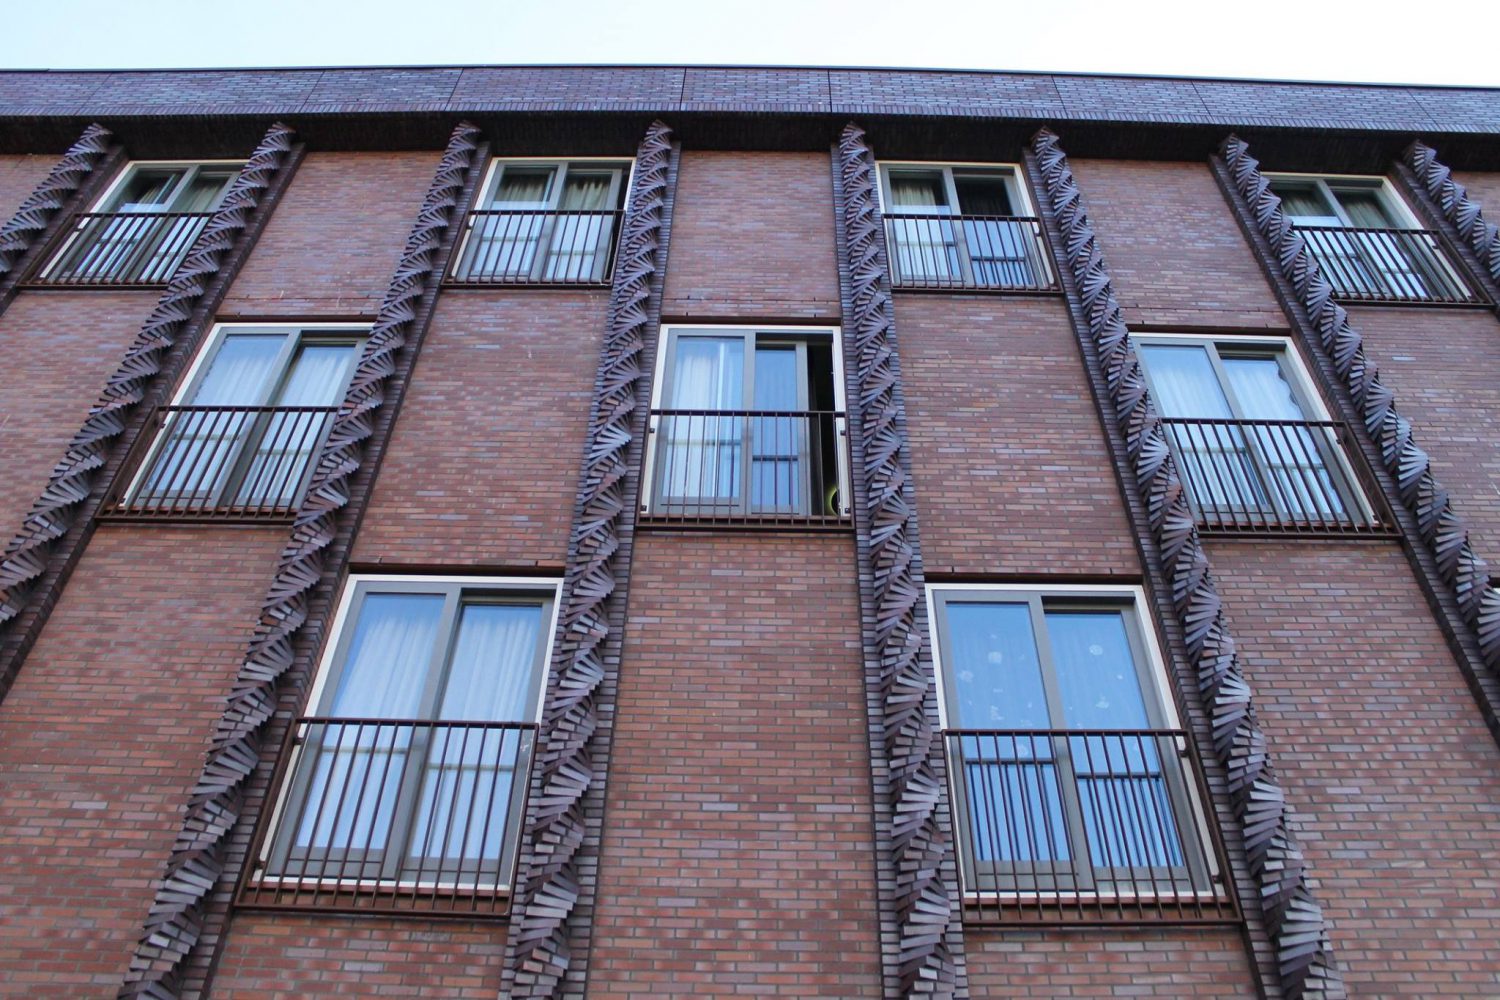 Lamelbalustraden - Franse balkons voorzien van lamellenbalustraden geproduceerd door Straatman Balustraden en Trappen.